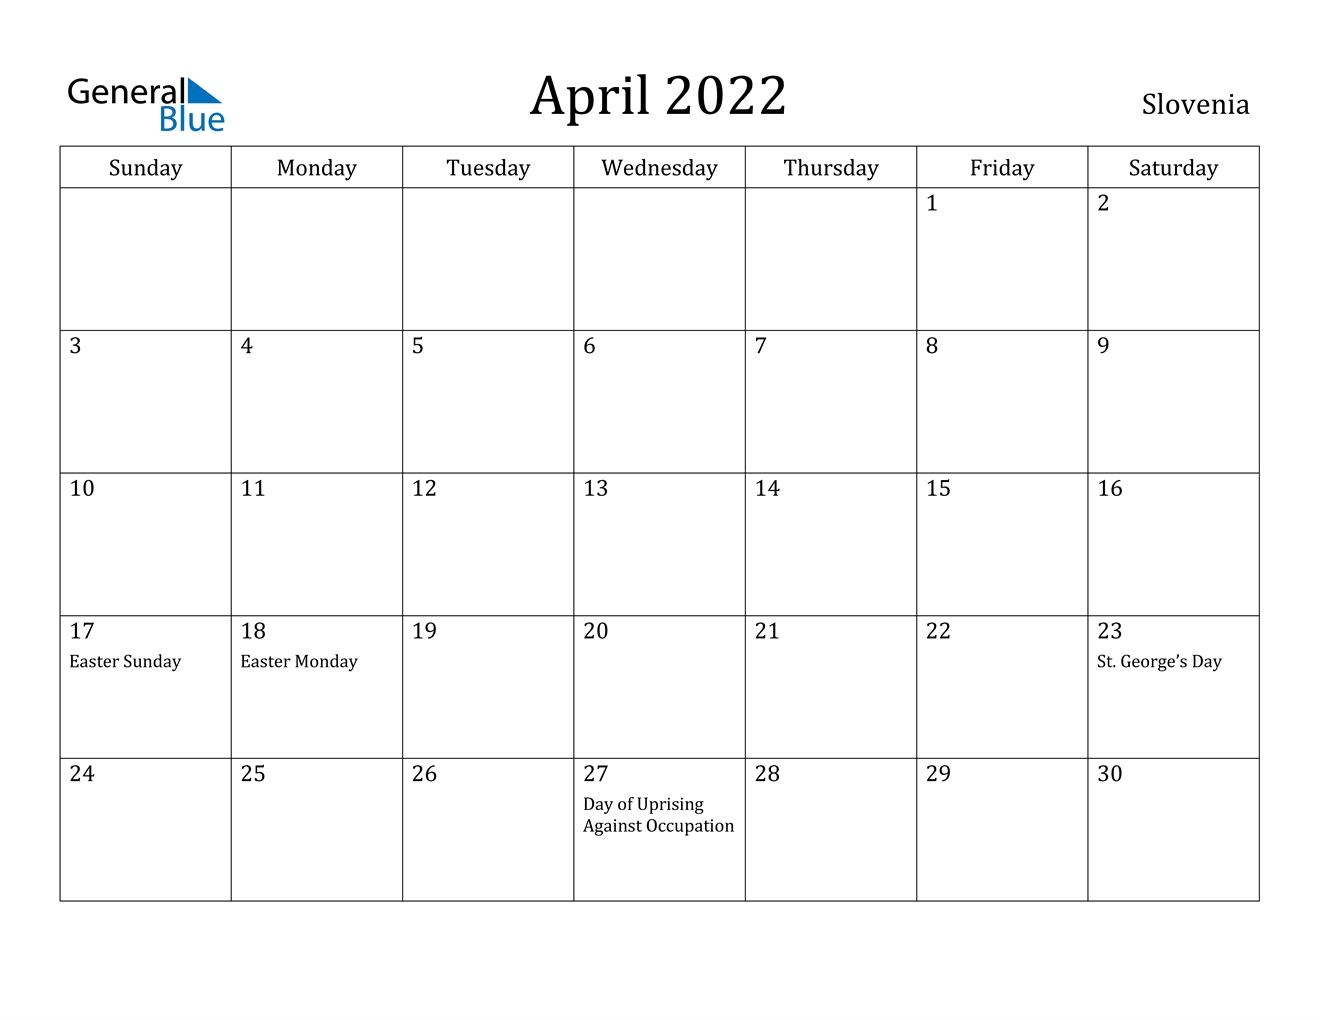 April 2022 Calendar - Slovenia